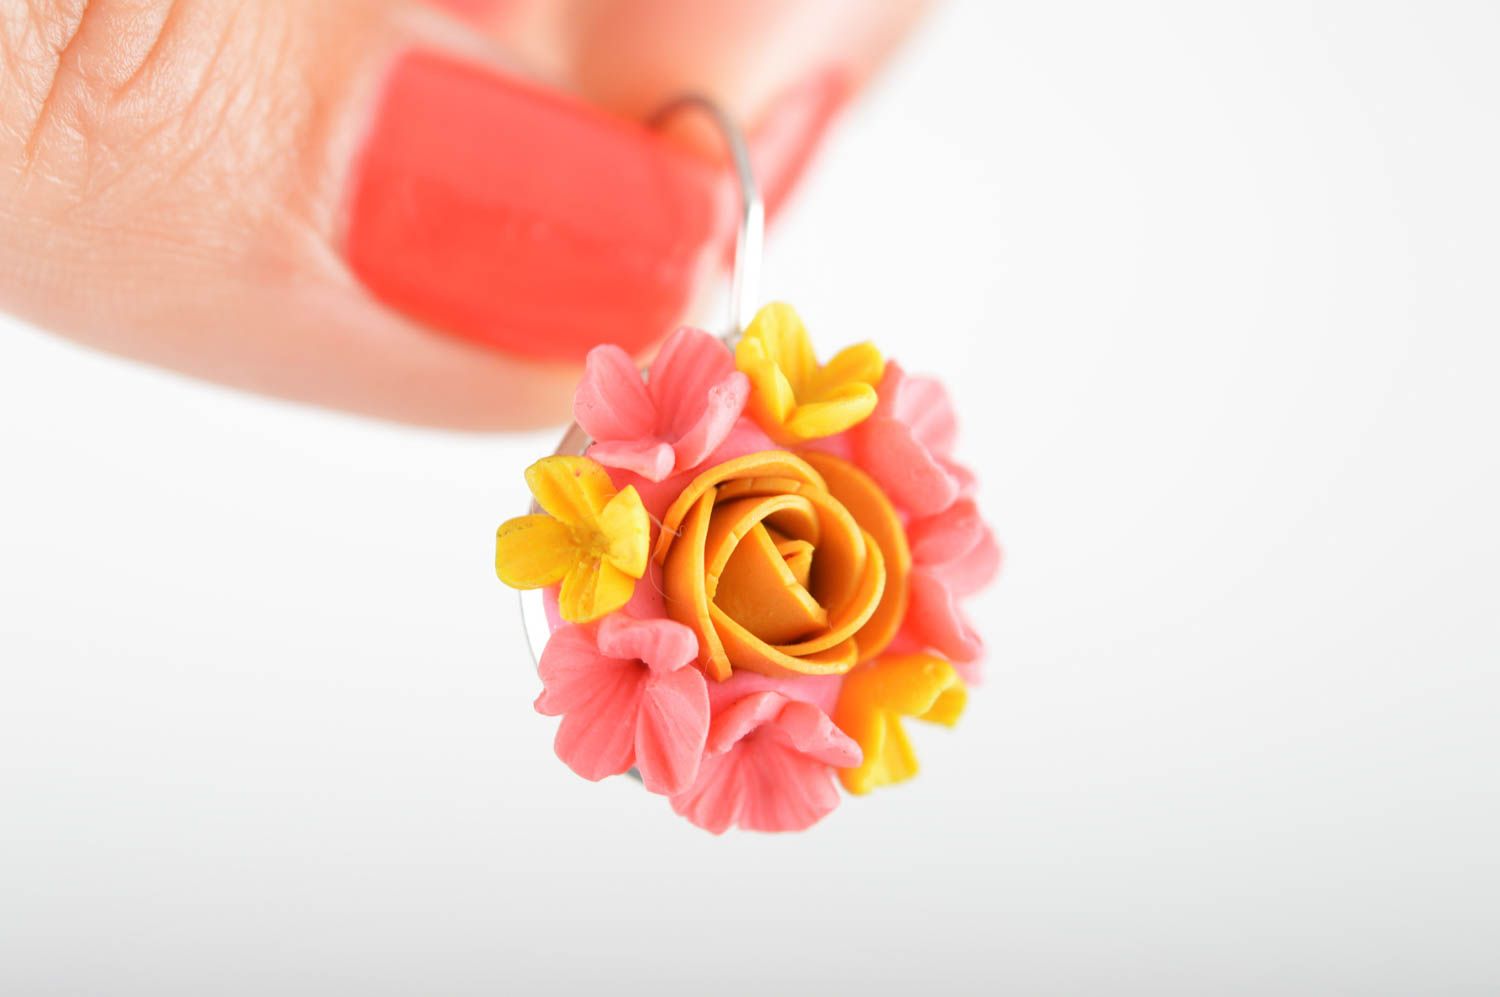 Серьги цветы из полимерной глины яркие розовые с желтым стильные ручной работы фото 3